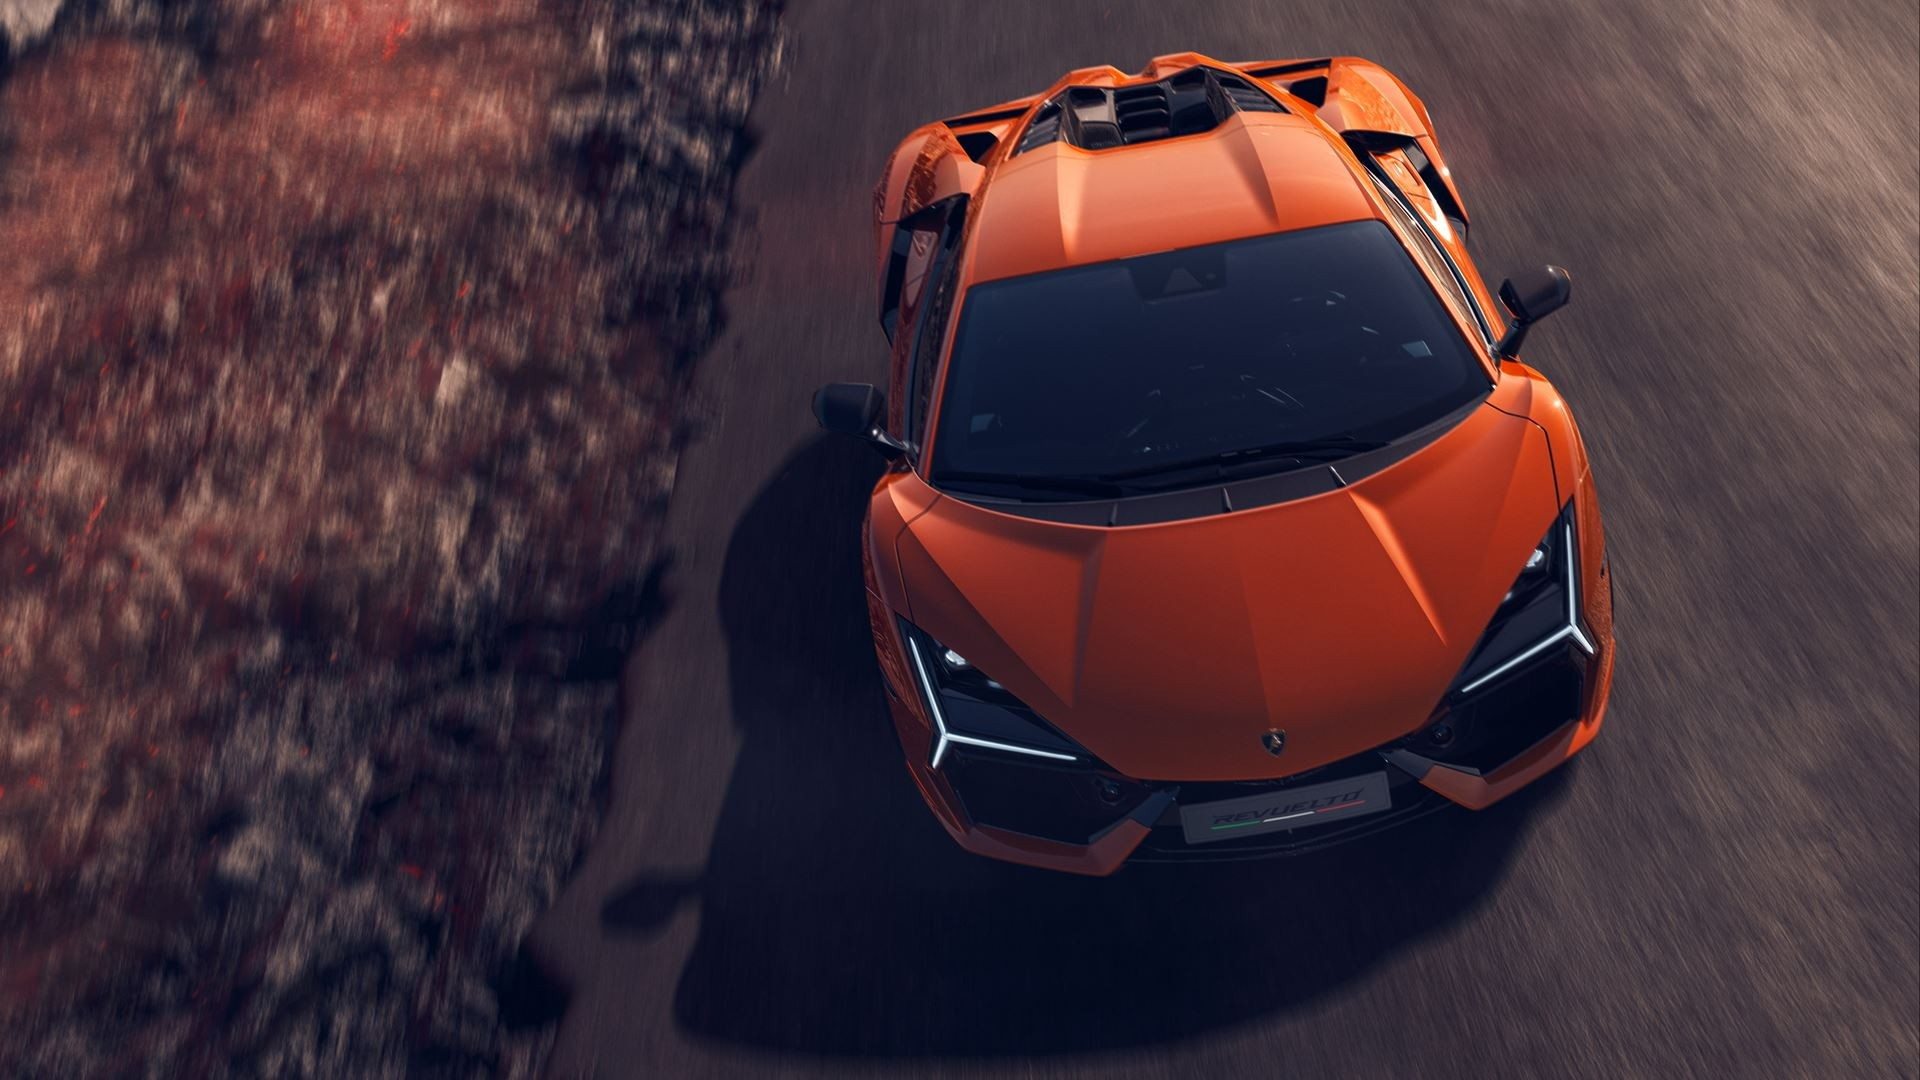 Lamborghini Revuelto Roadster em renderizações não oficiais